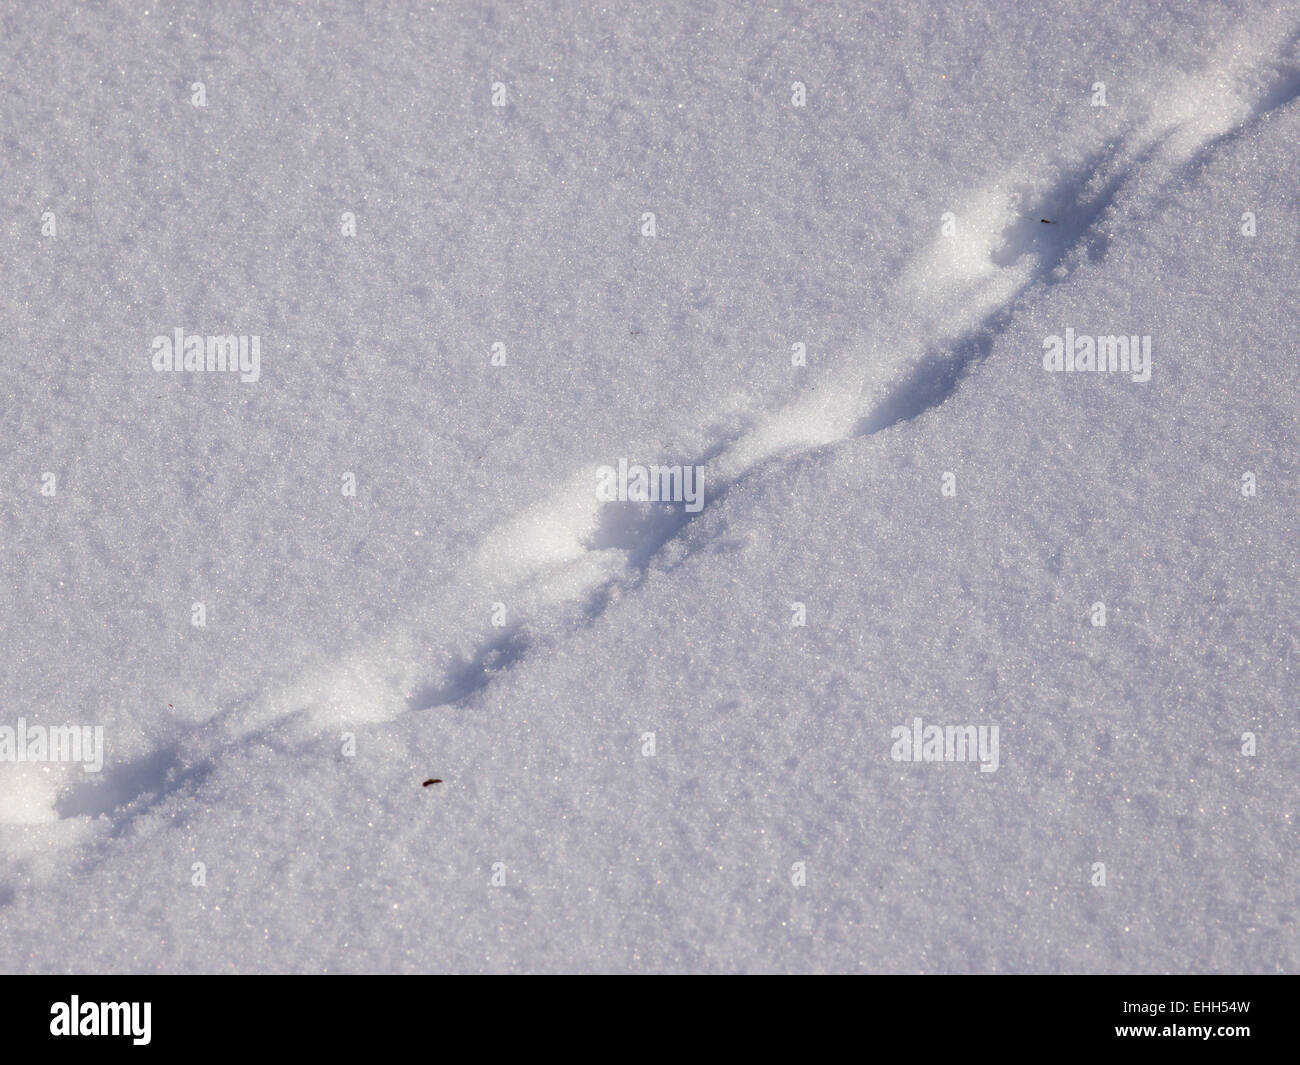 La trace de la souris sur la neige Photo Stock - Alamy